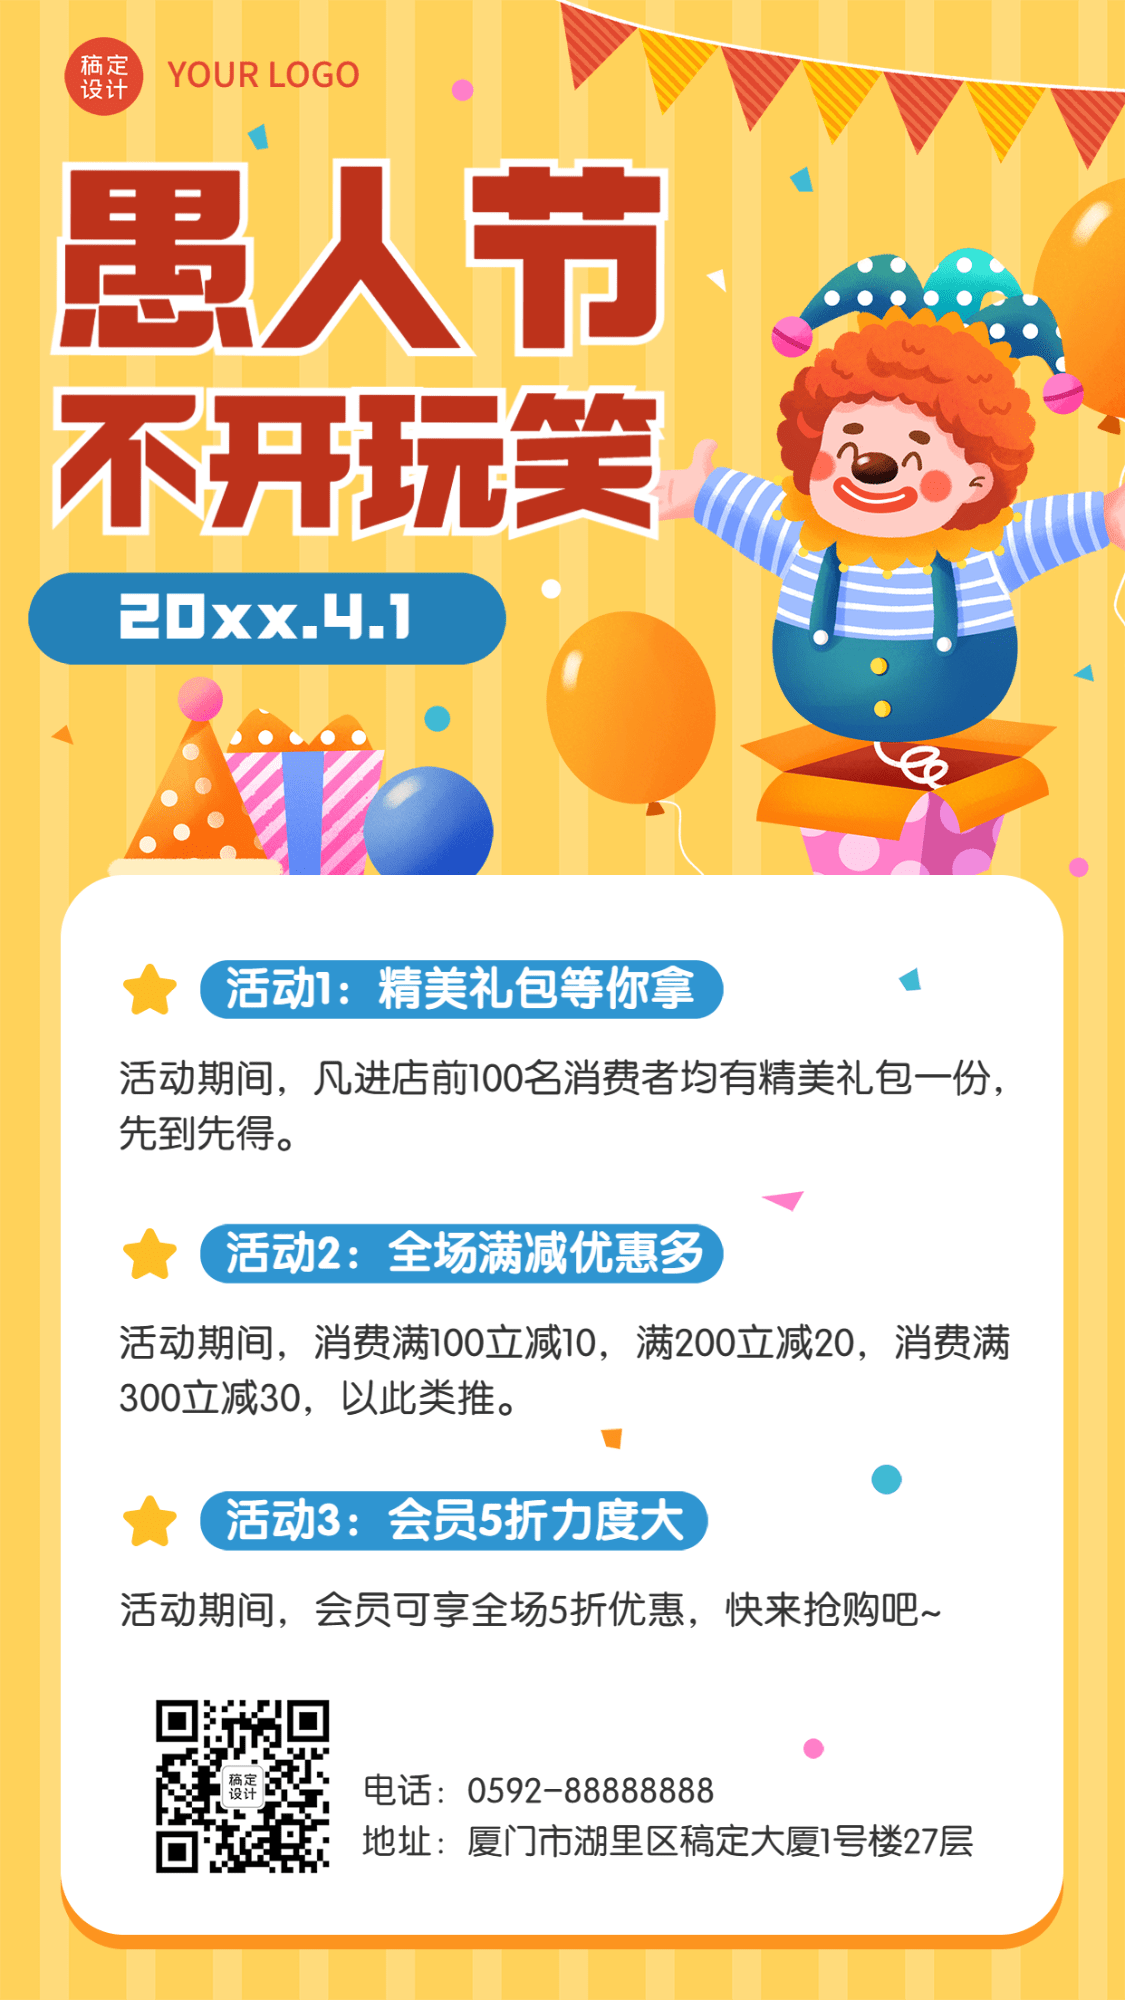 4.1愚人节节日促销活动手机海报预览效果